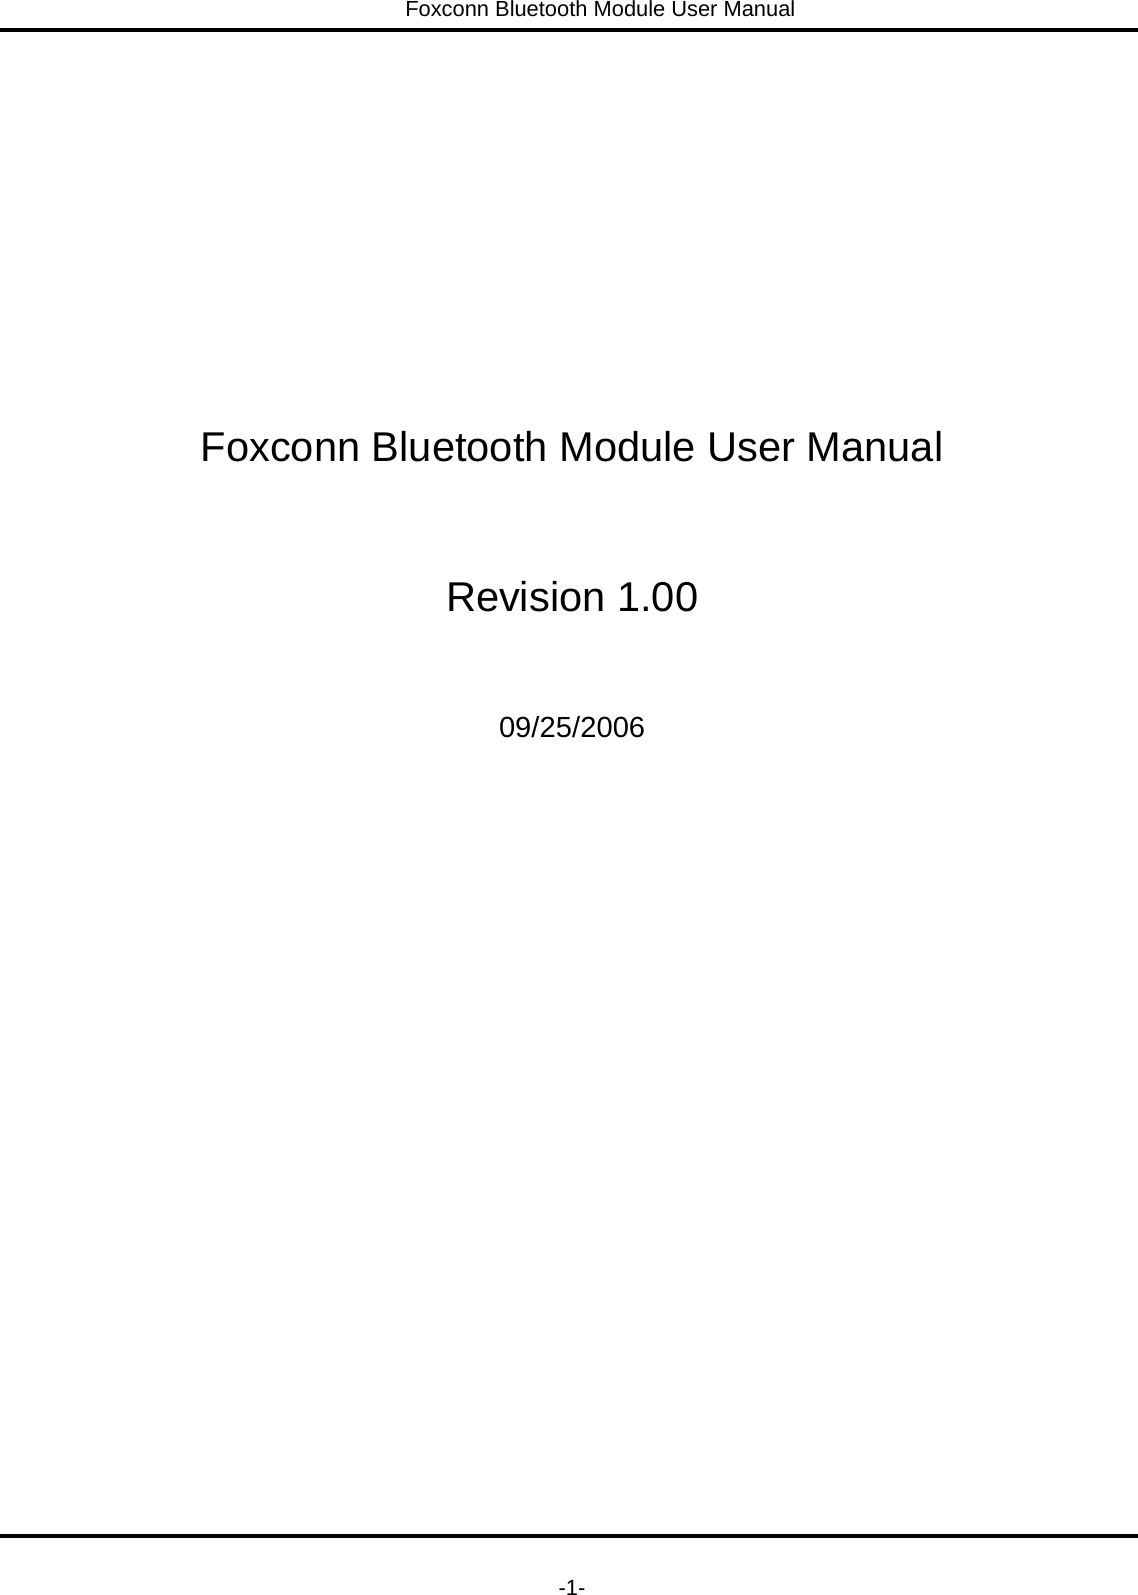 Foxconn Bluetooth Module User Manual   -1-      Foxconn Bluetooth Module User Manual  Revision 1.00  09/25/2006 